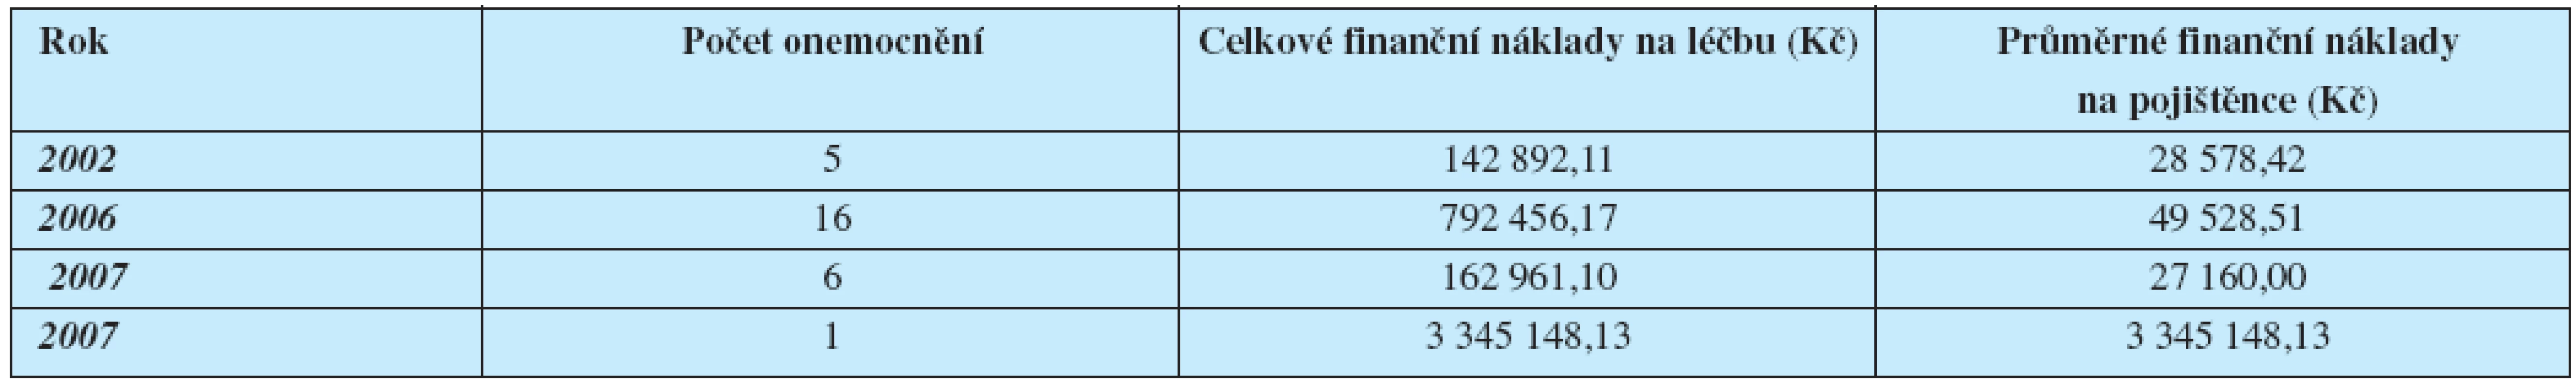 Analýza finančních nákladů na léčbu klíšťové encefalitidy v kmeni pojištěnců HZP